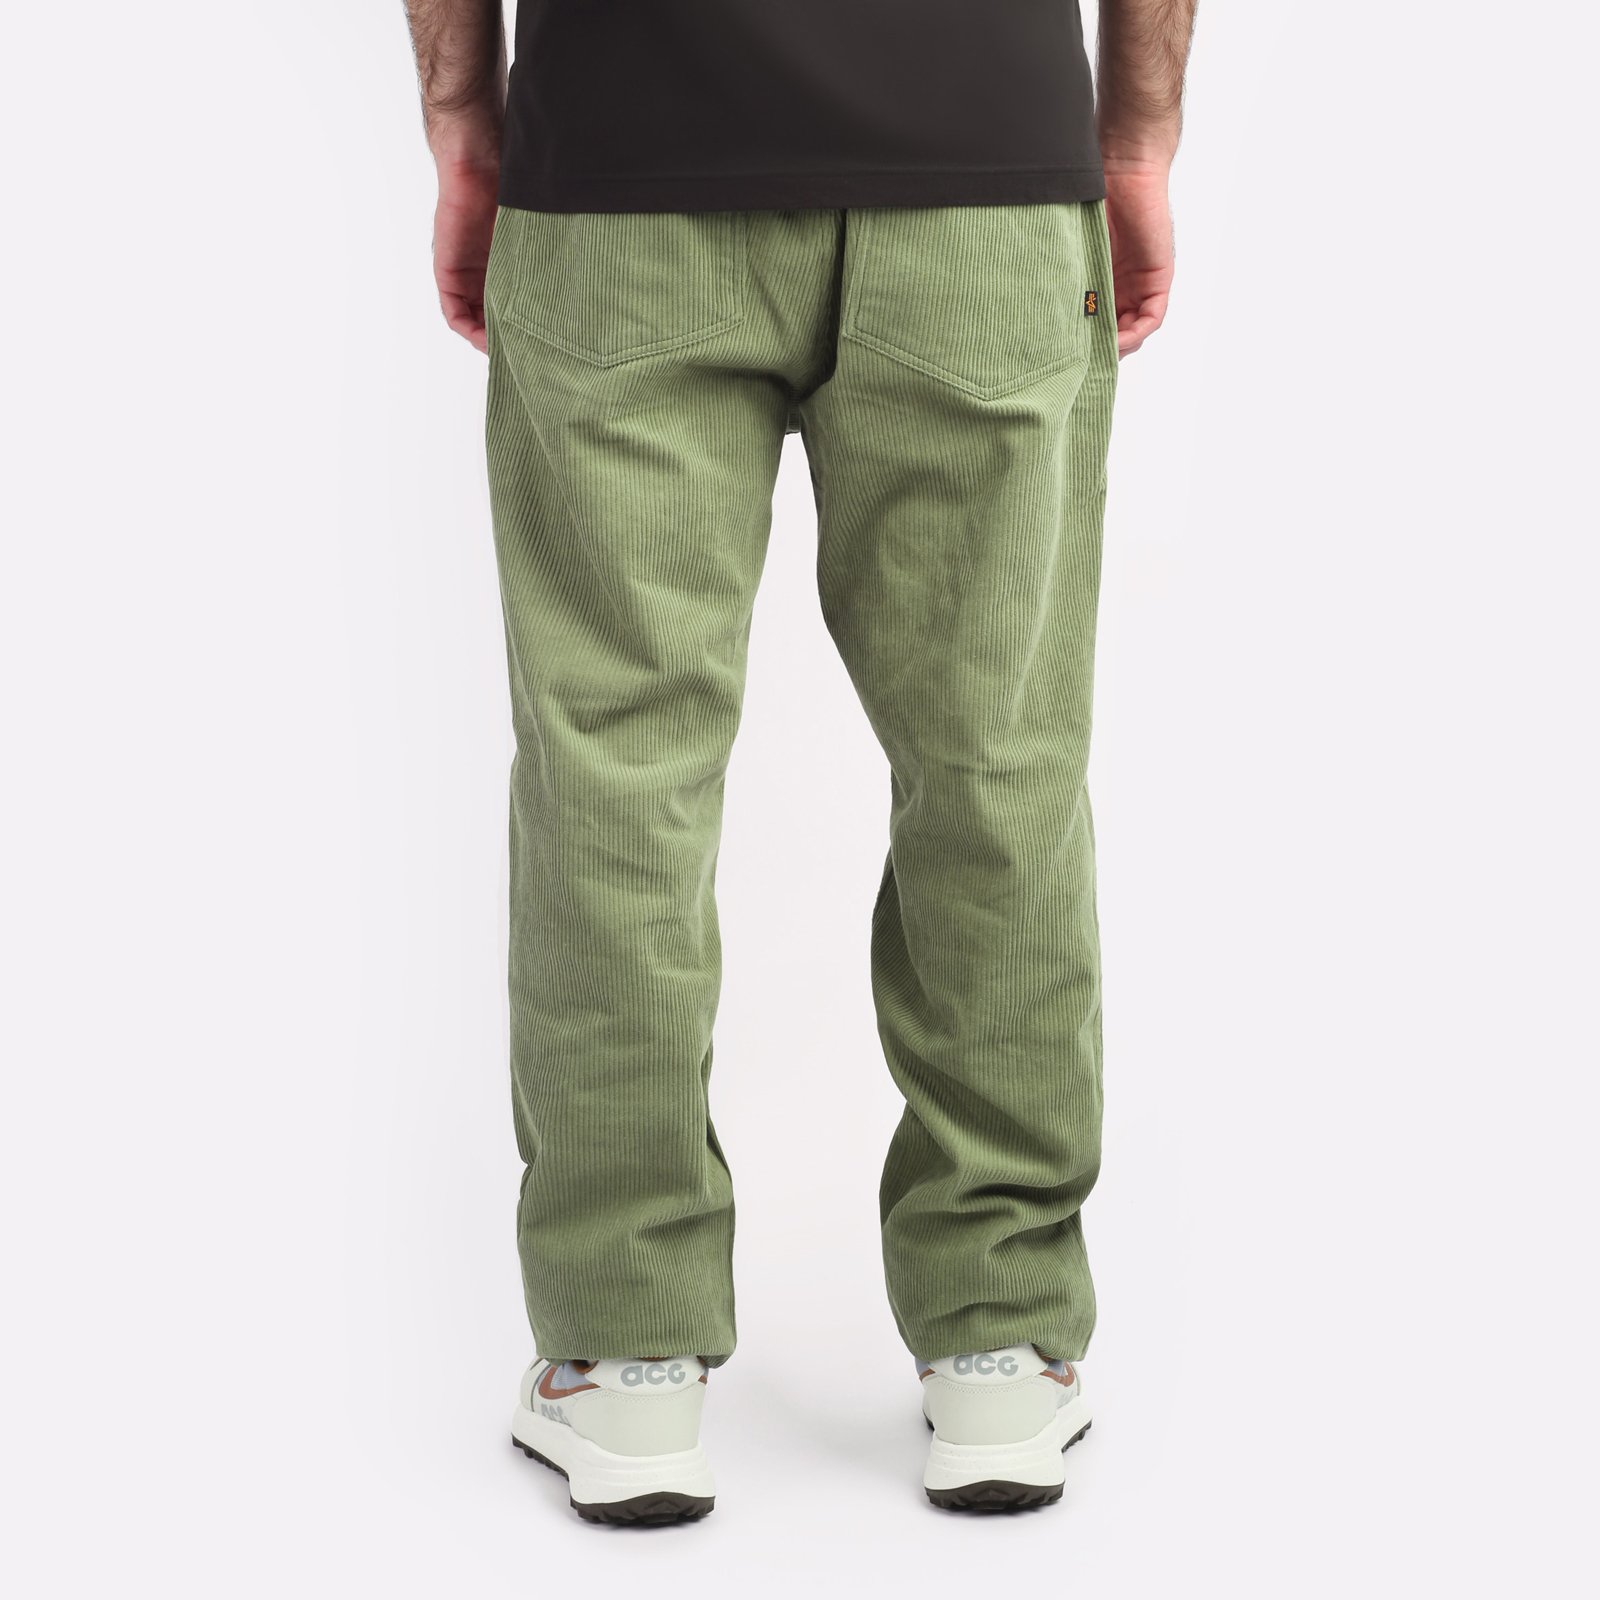 мужские брюки Alpha Industries Corduroy Fatigue Pant  (MBC53501CO-green)  - цена, описание, фото 2